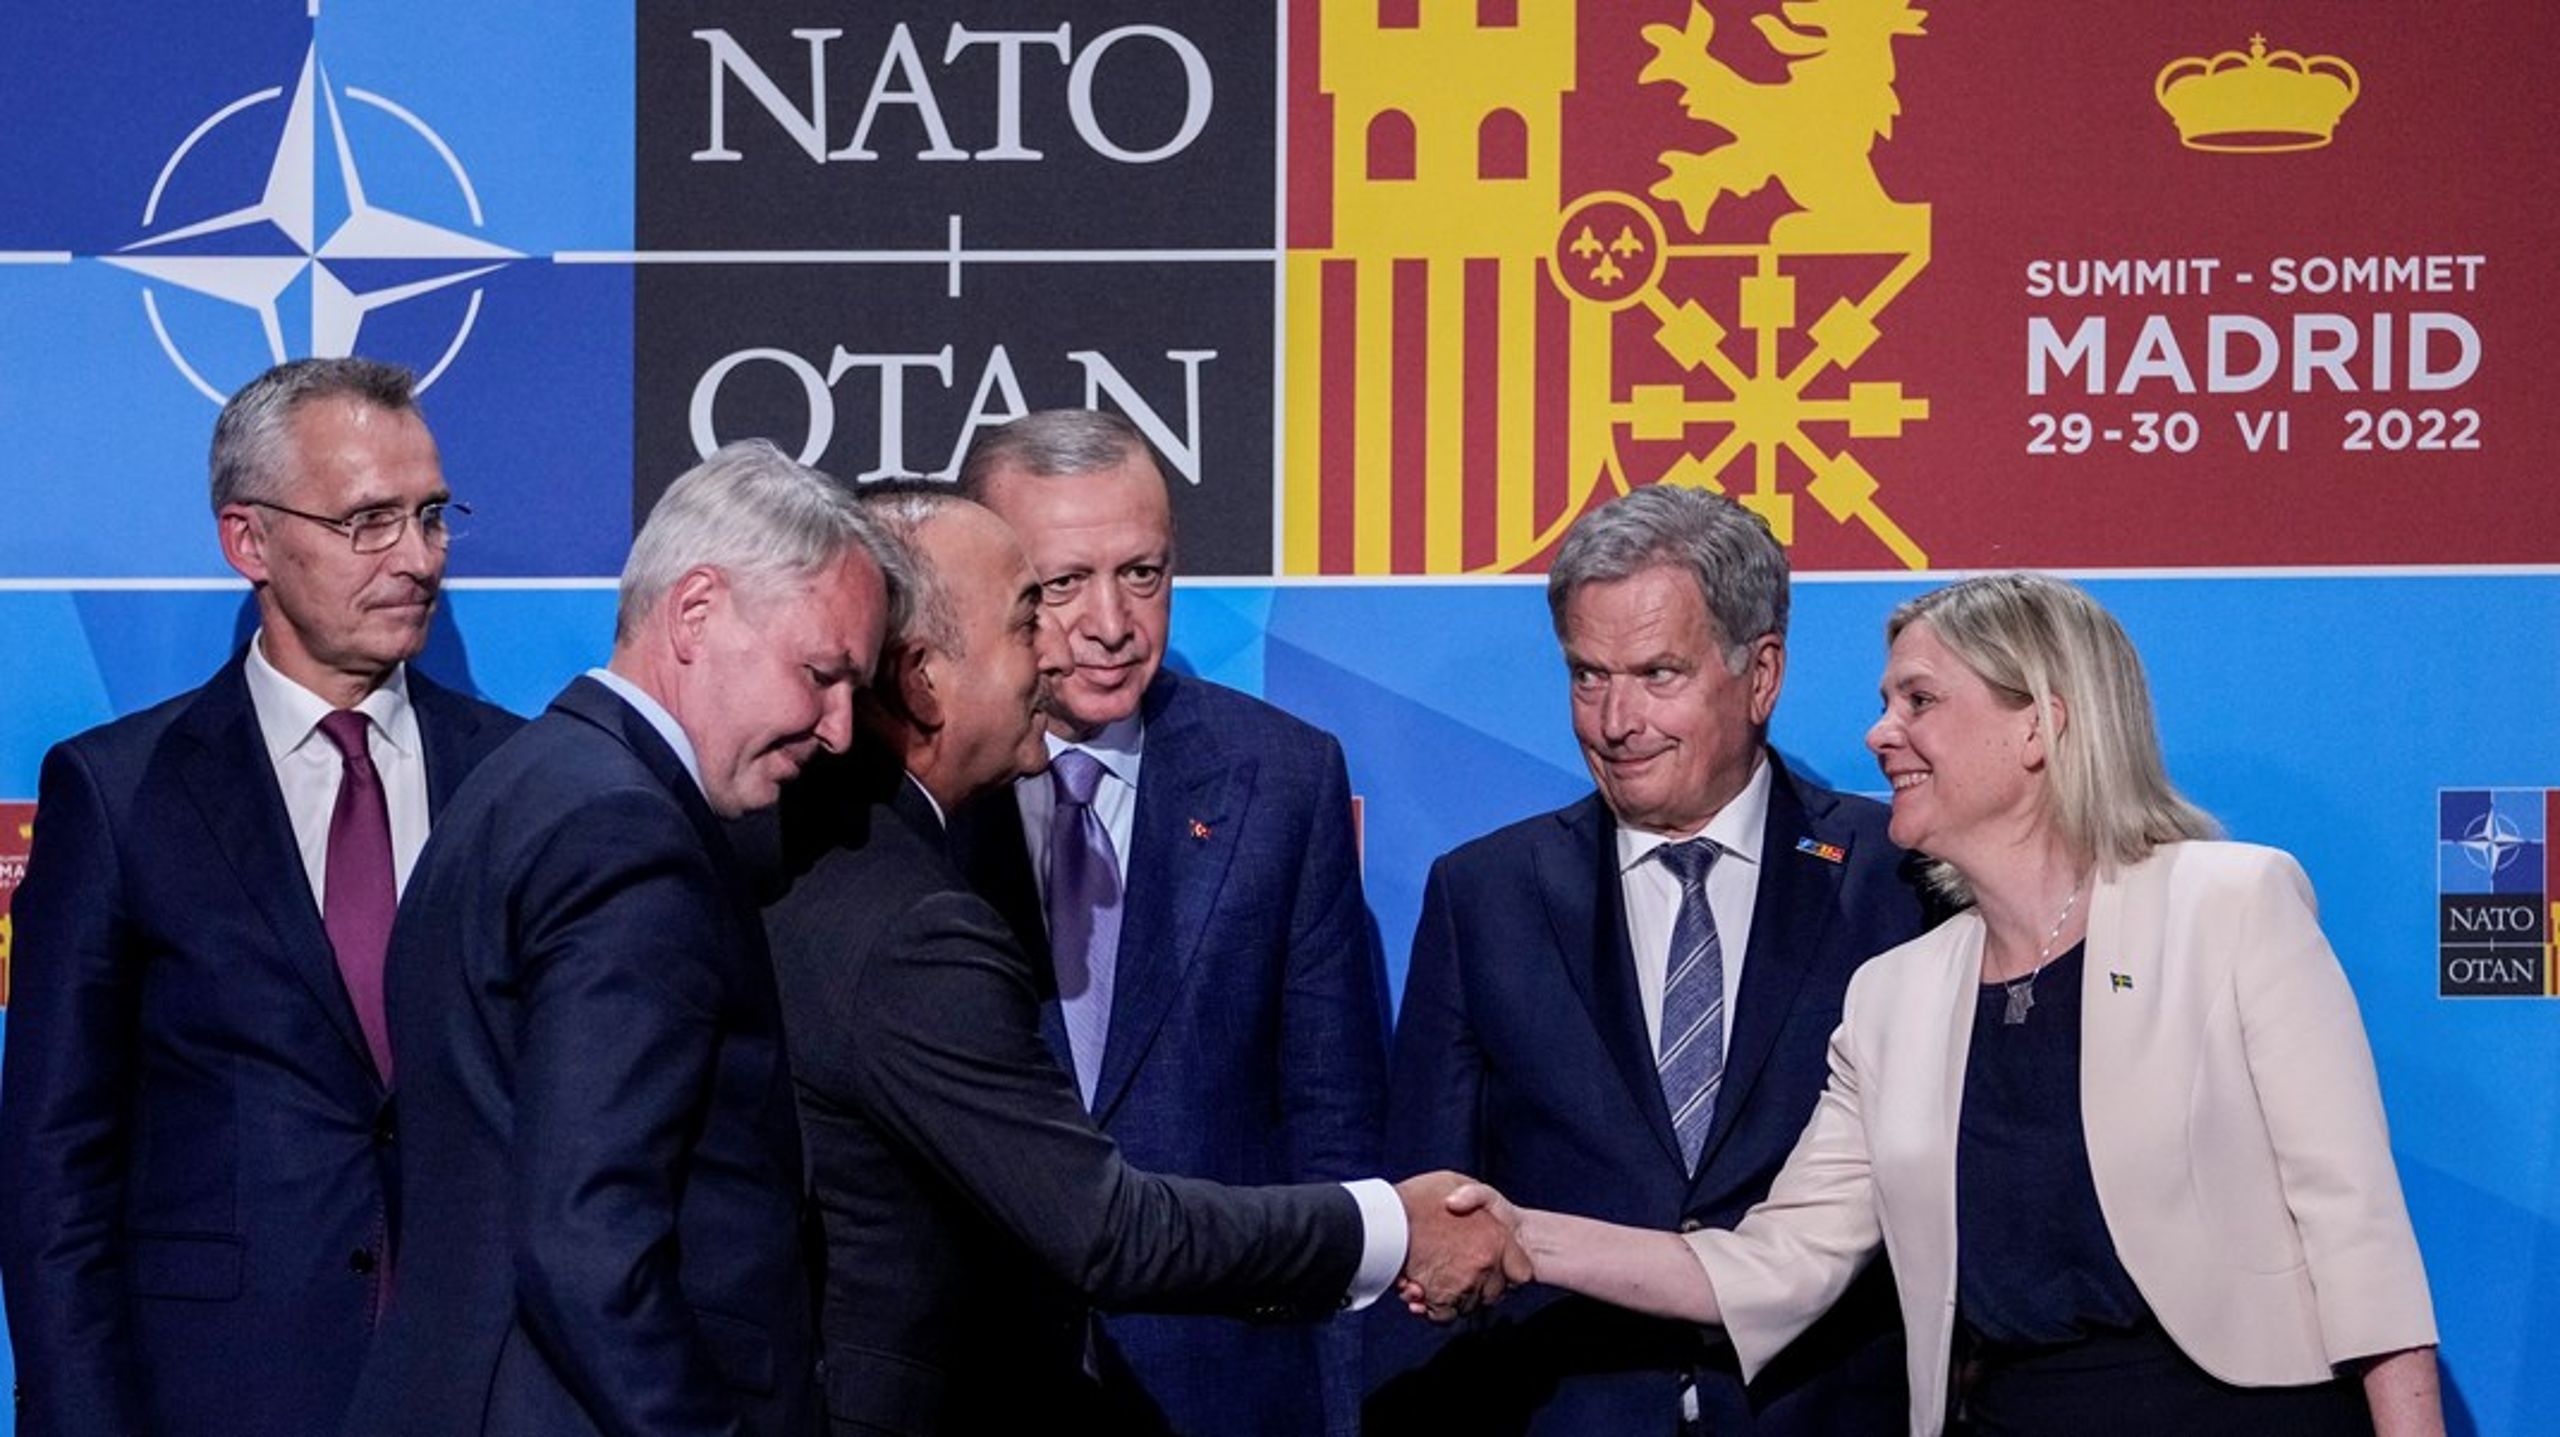 Vid Natos toppmöte i Madrid i juni medverkade både statsminister Magdalena Andersson och Finlands president&nbsp;Sauli Niinistö.